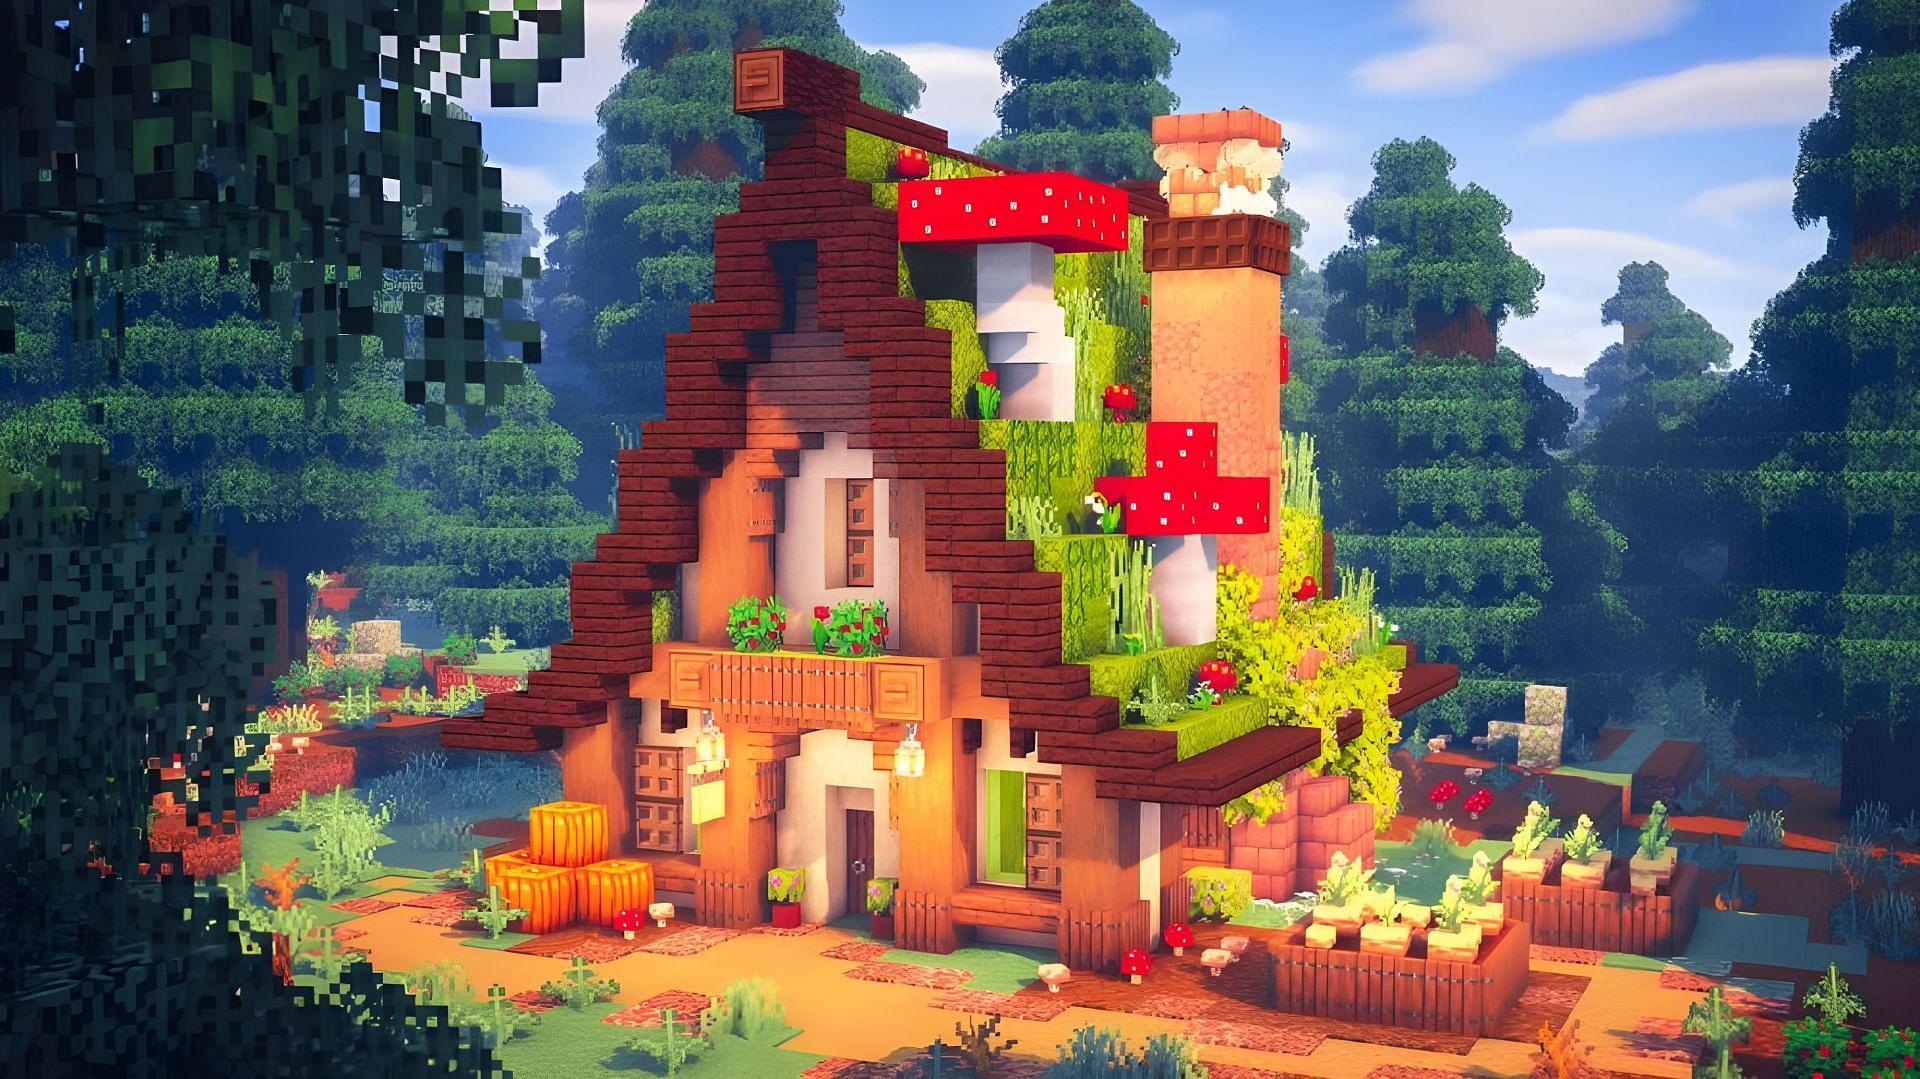 The Botanical House (Image via Youtube/Zaypixel)